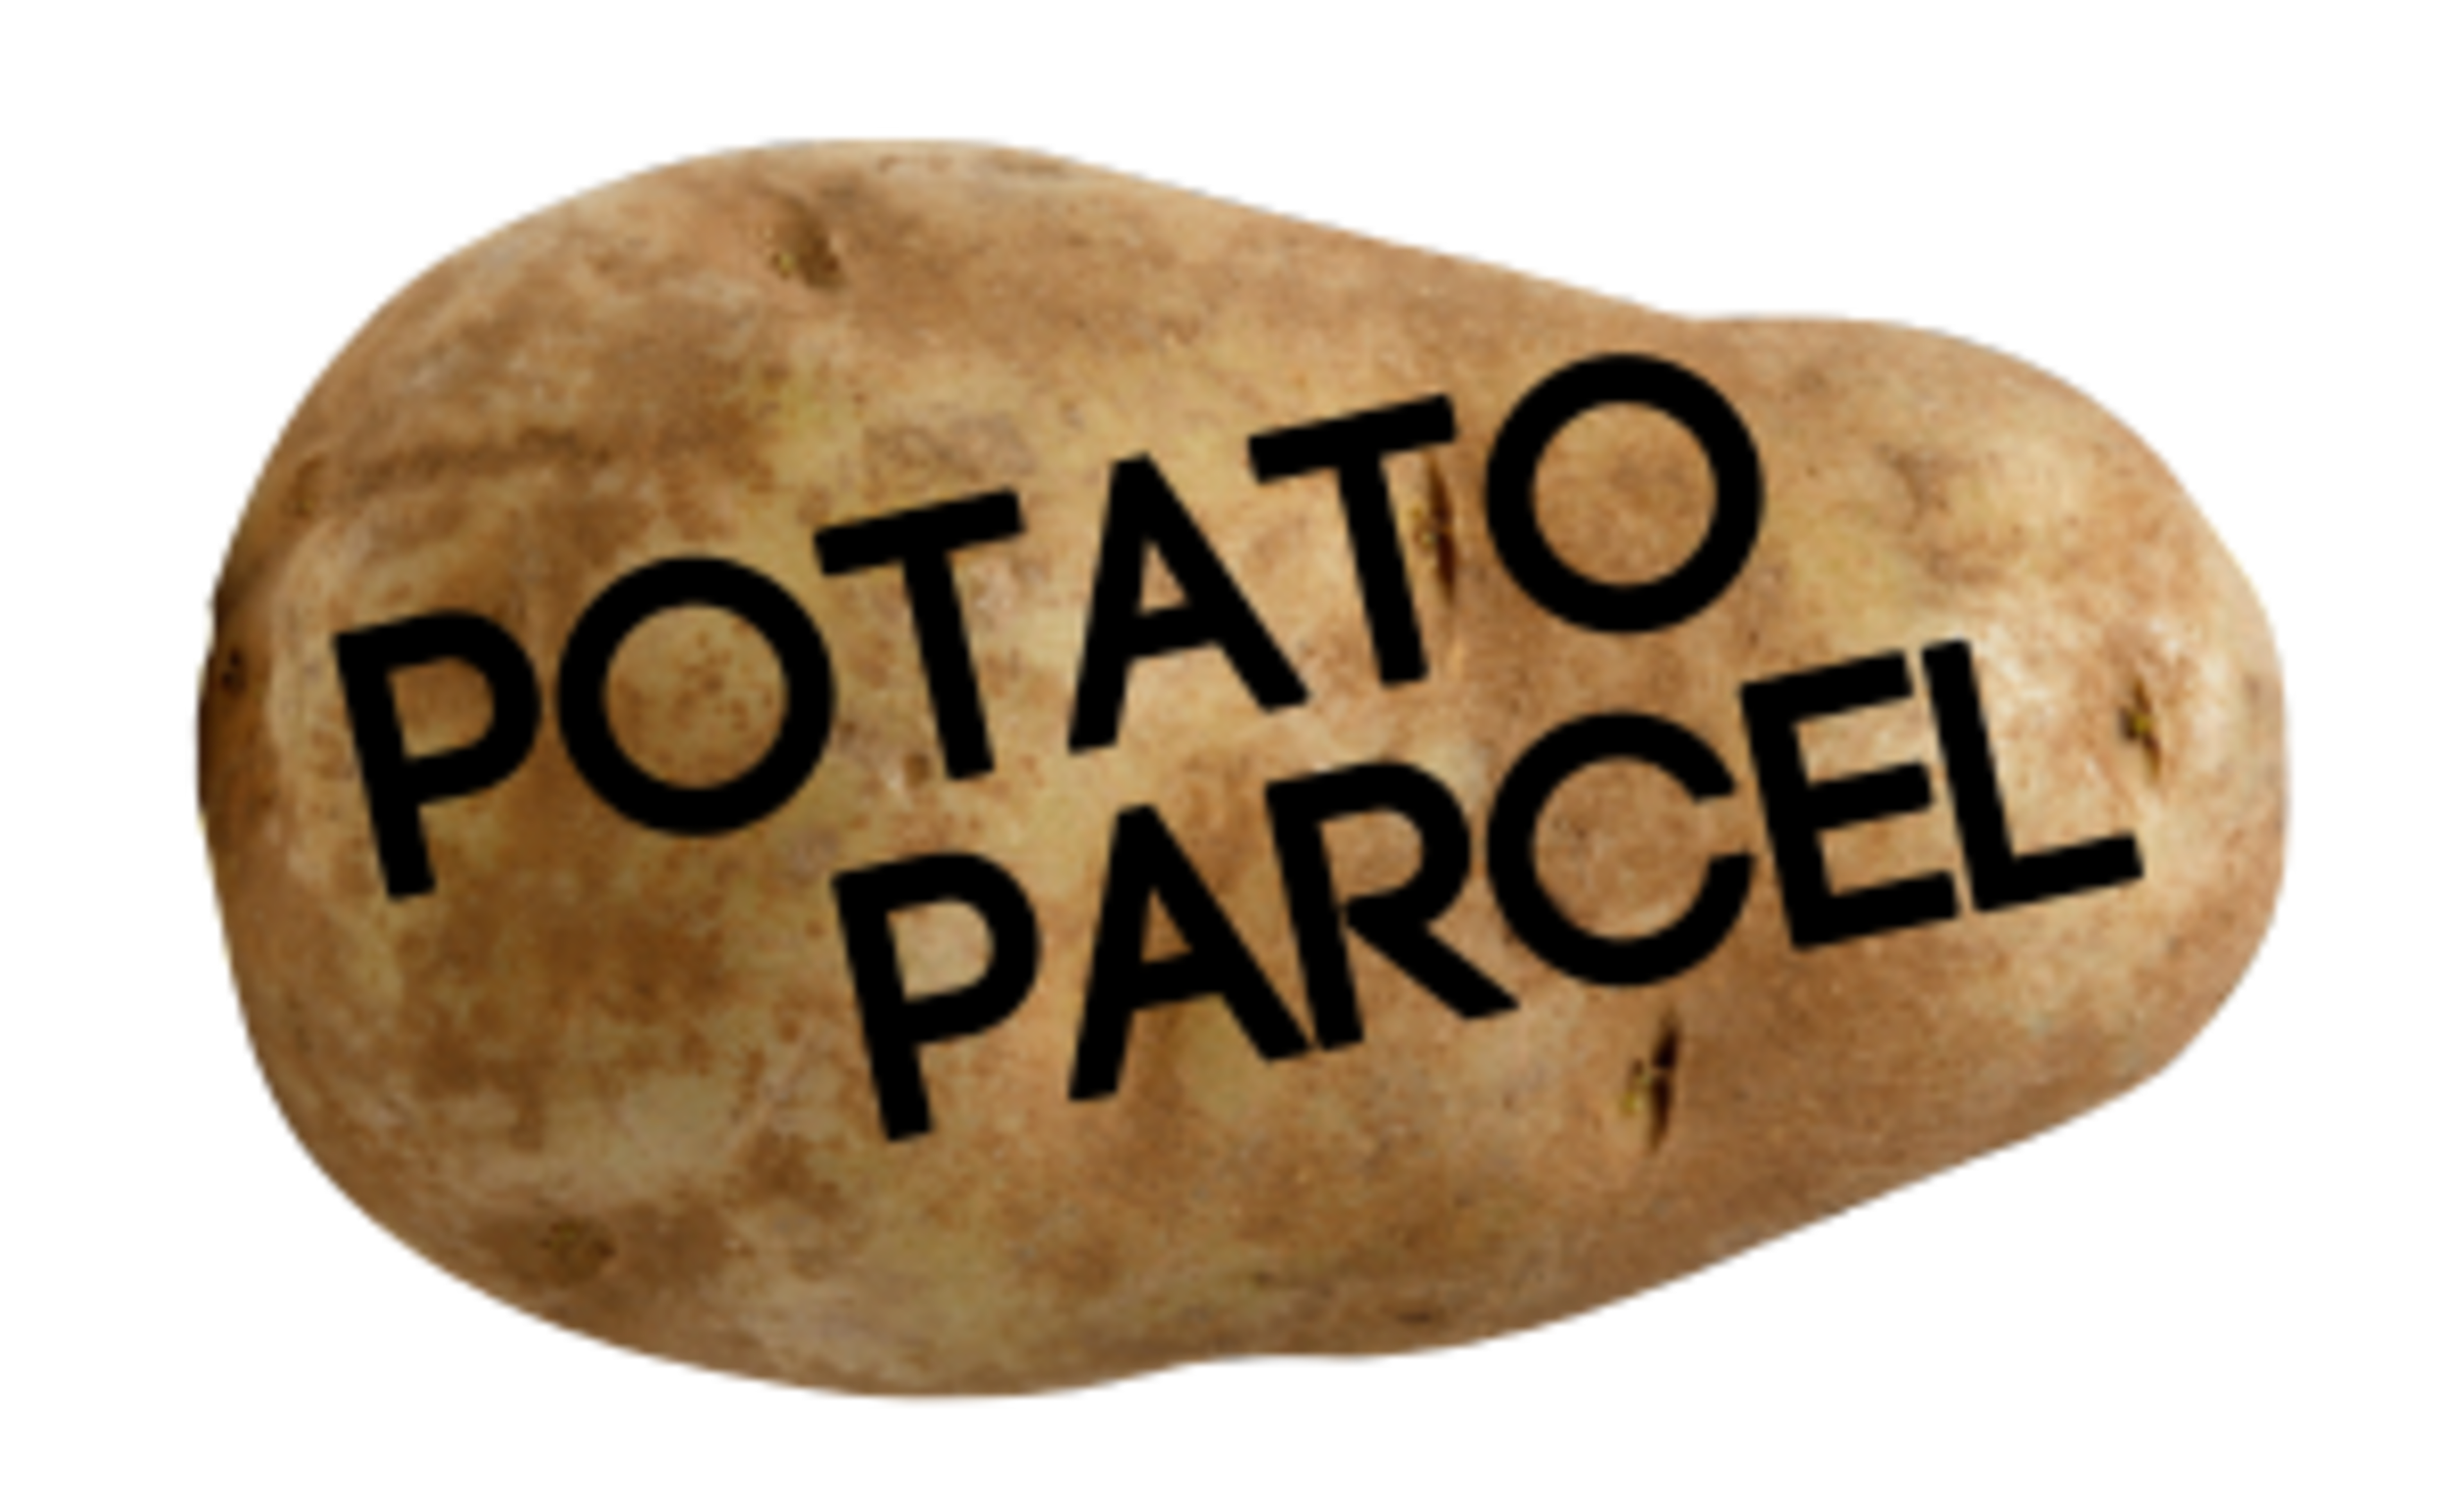 Potato Parcel Code